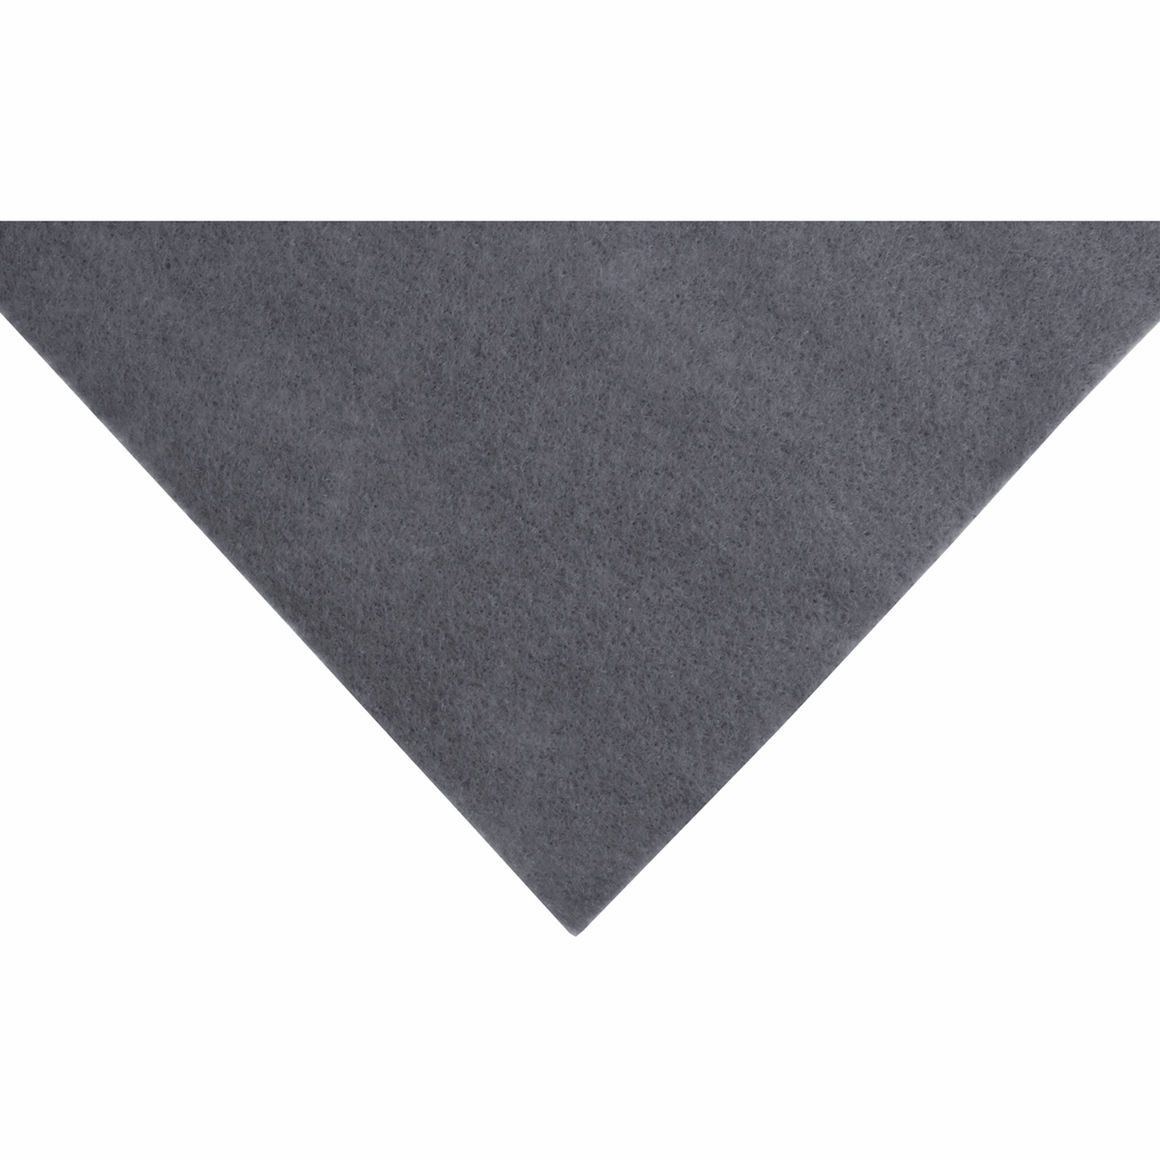 Grey Acrylic Felt - 1 x A4 sheet (23cm x 30cm | 9 x 12 inches)